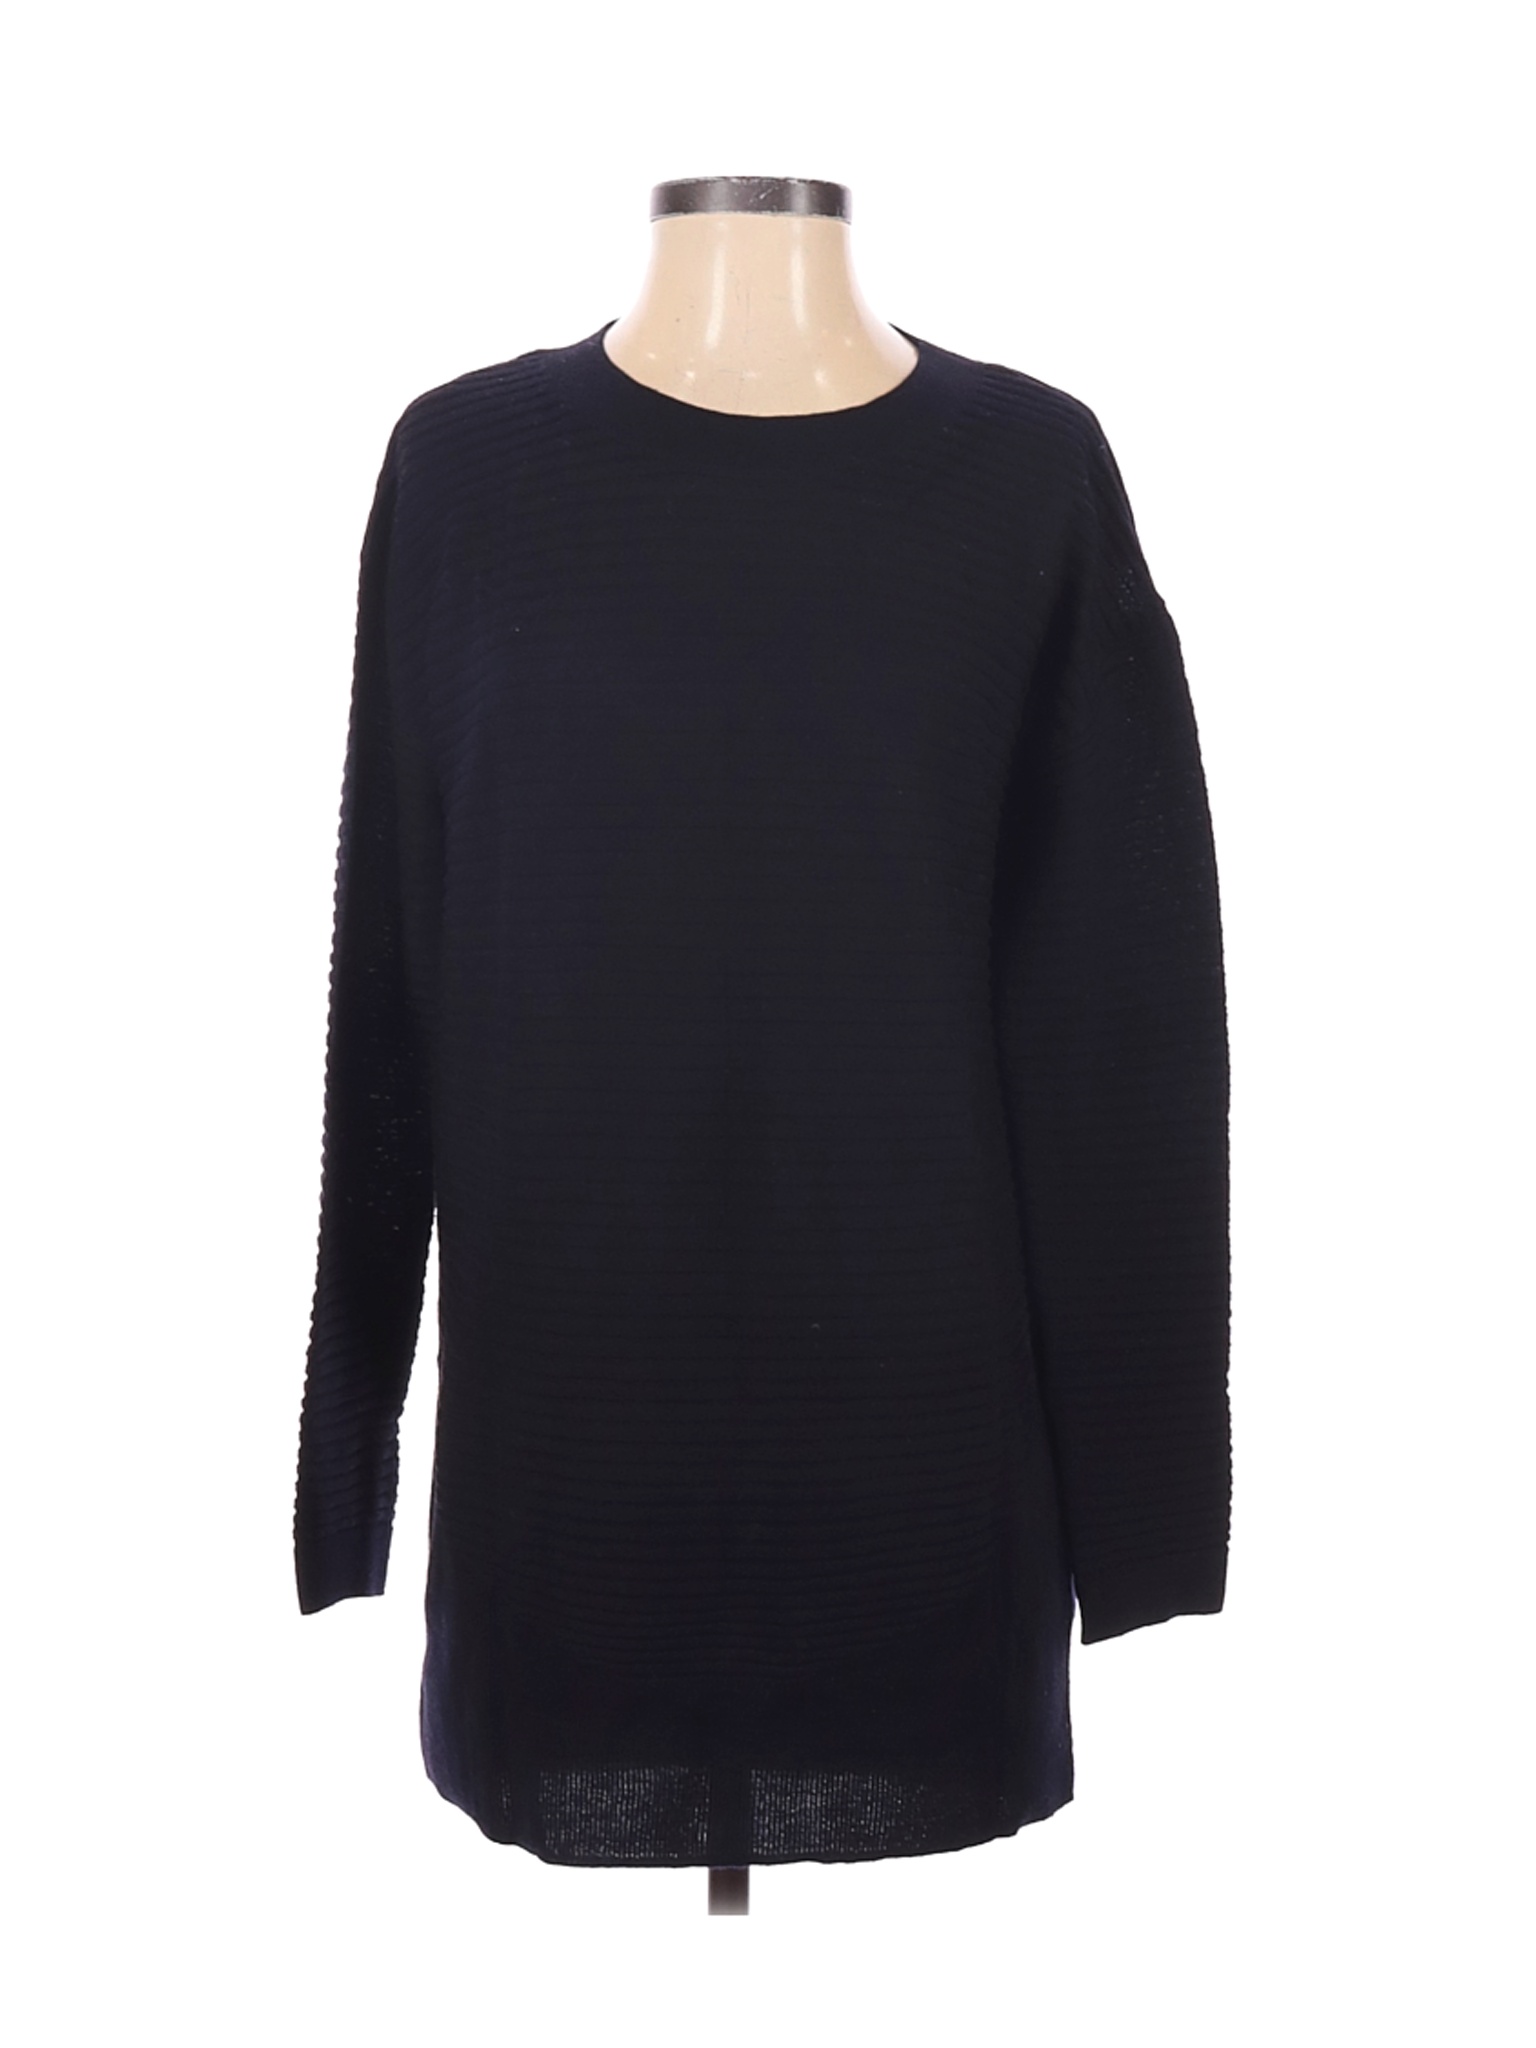 Cos Women Black Wool Pullover Sweater S | eBay